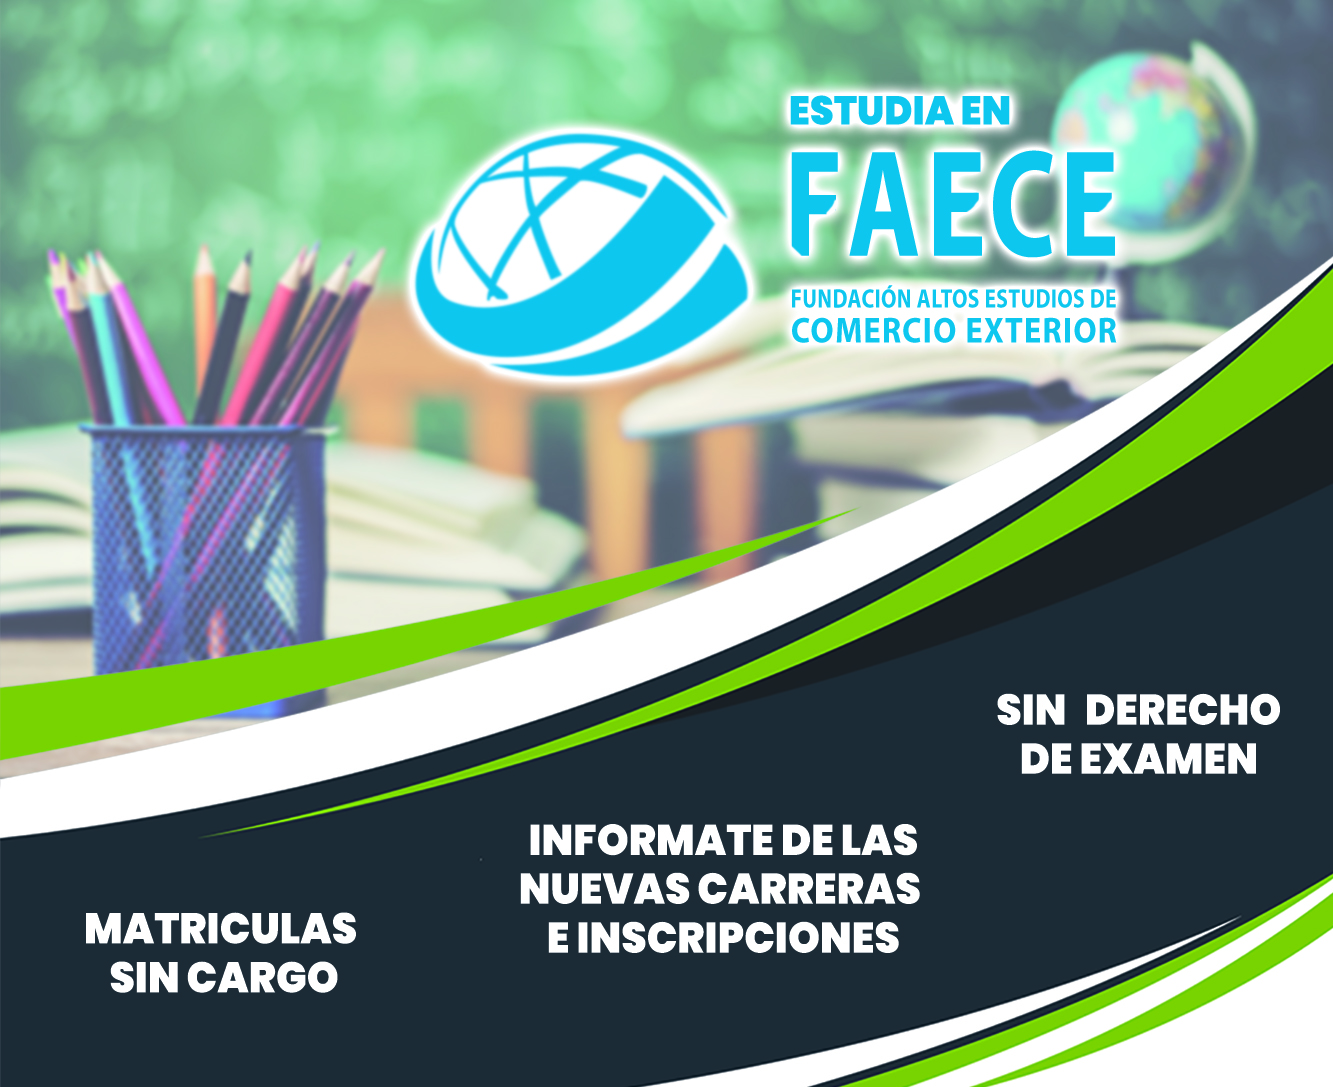 FAECE - FUNDACIÓN ALTOS ESTUDIOS DE COMERCIO EXTERIOR